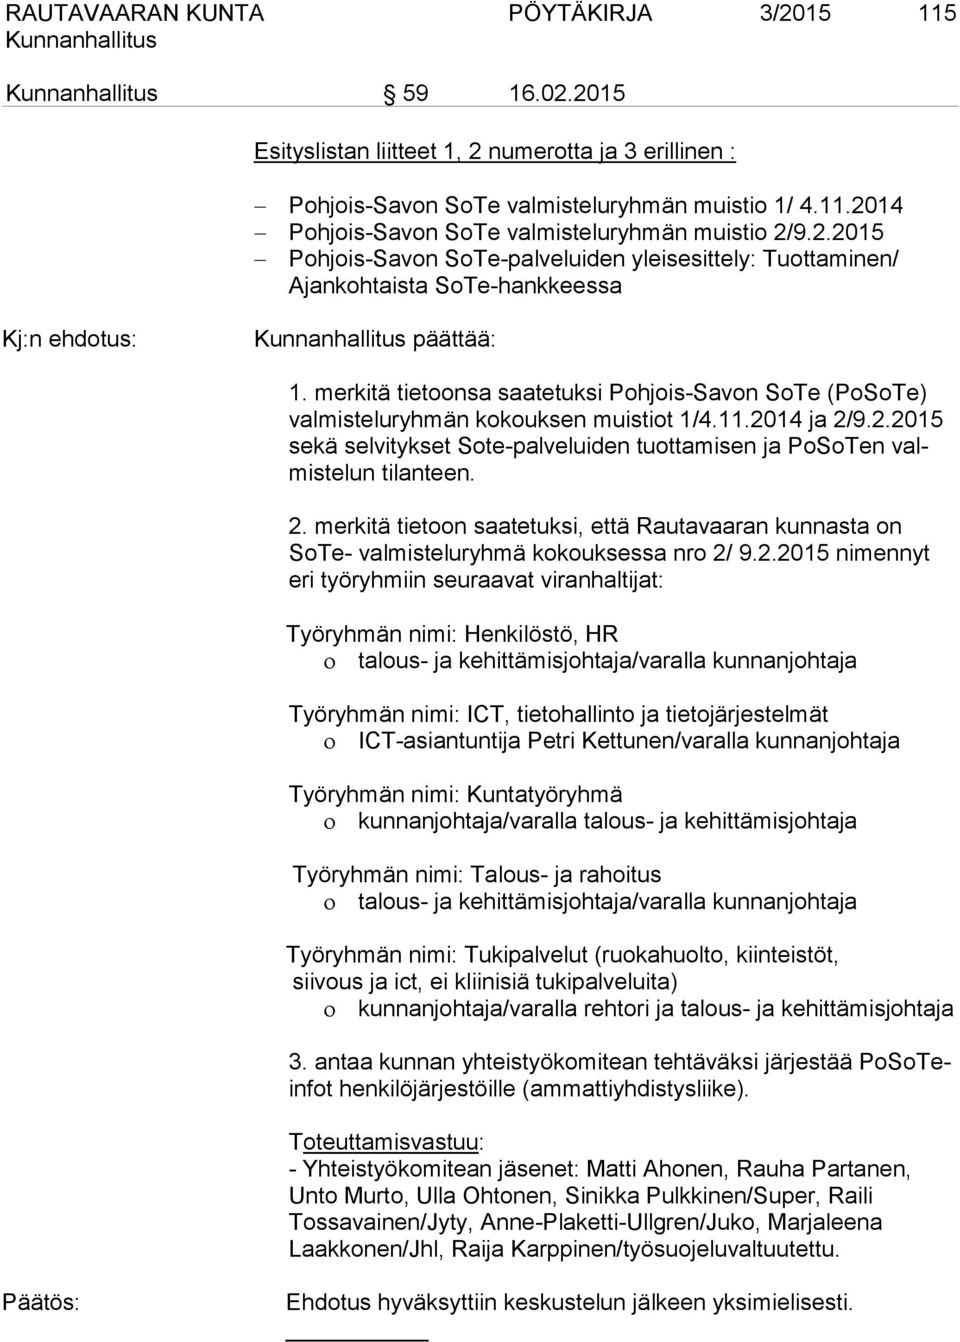 merkitä tietoonsa saatetuksi Pohjois-Savon SoTe (PoSoTe) valmisteluryhmän kokouksen muistiot 1/4.11.2014 ja 2/9.2.2015 sekä selvitykset Sote-palveluiden tuottamisen ja PoSoTen valmistelun tilanteen.